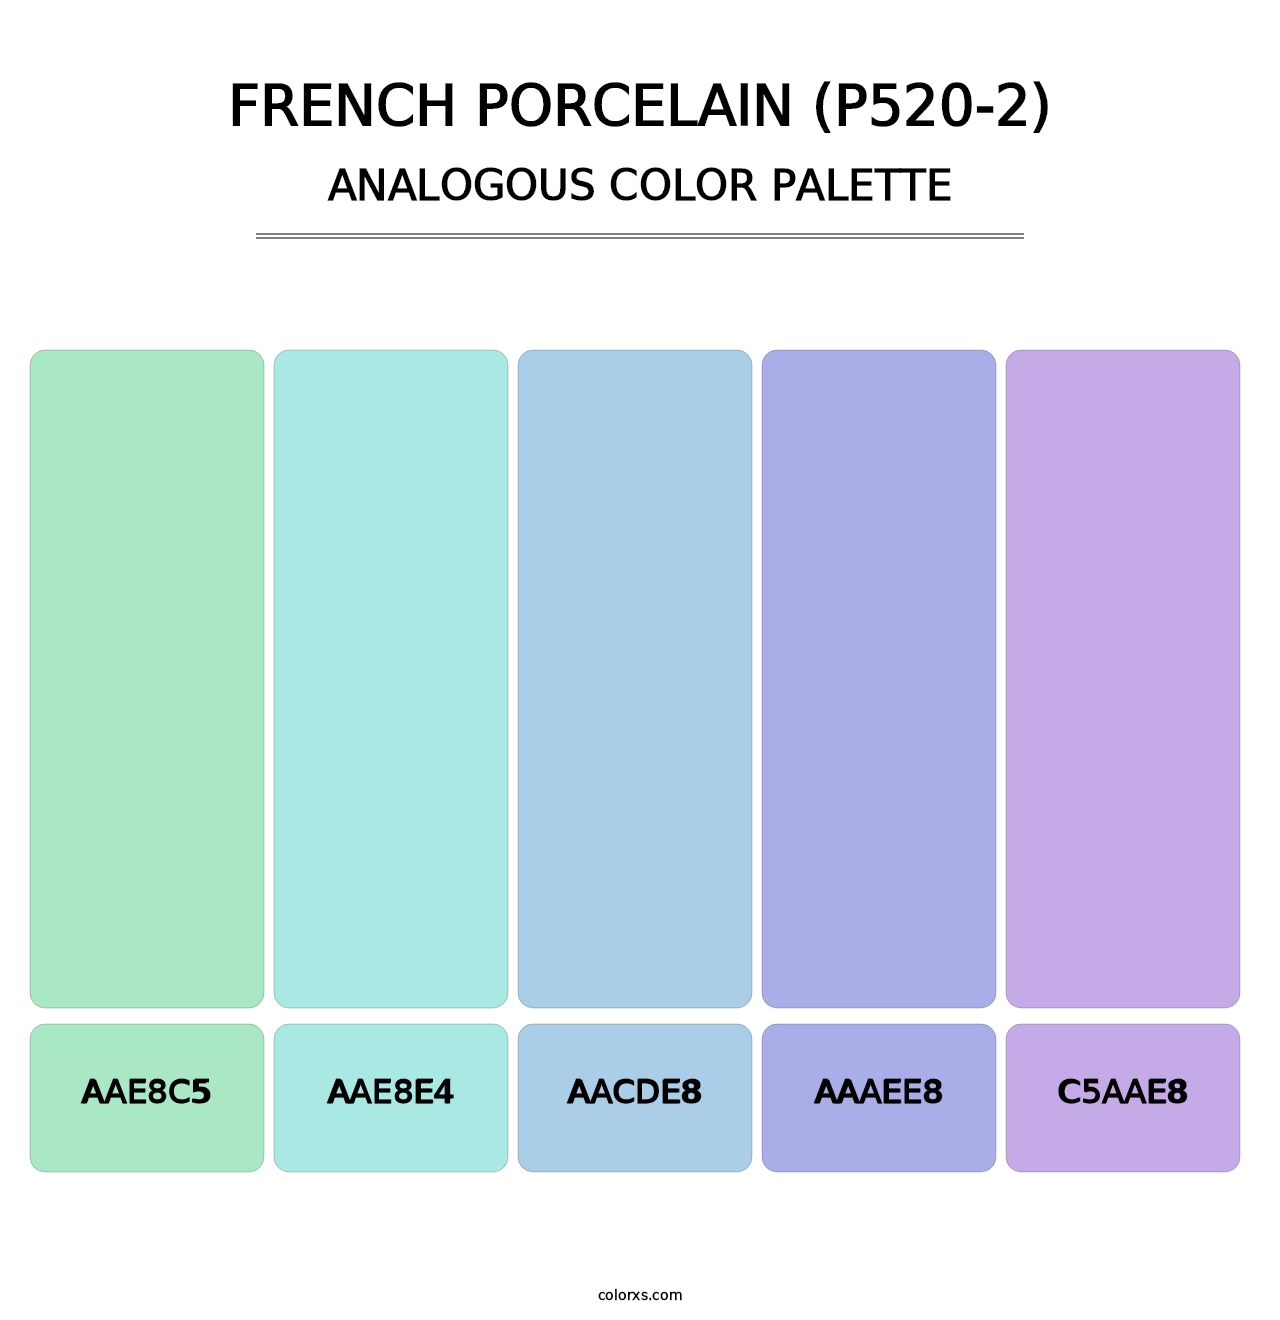 French Porcelain (P520-2) - Analogous Color Palette